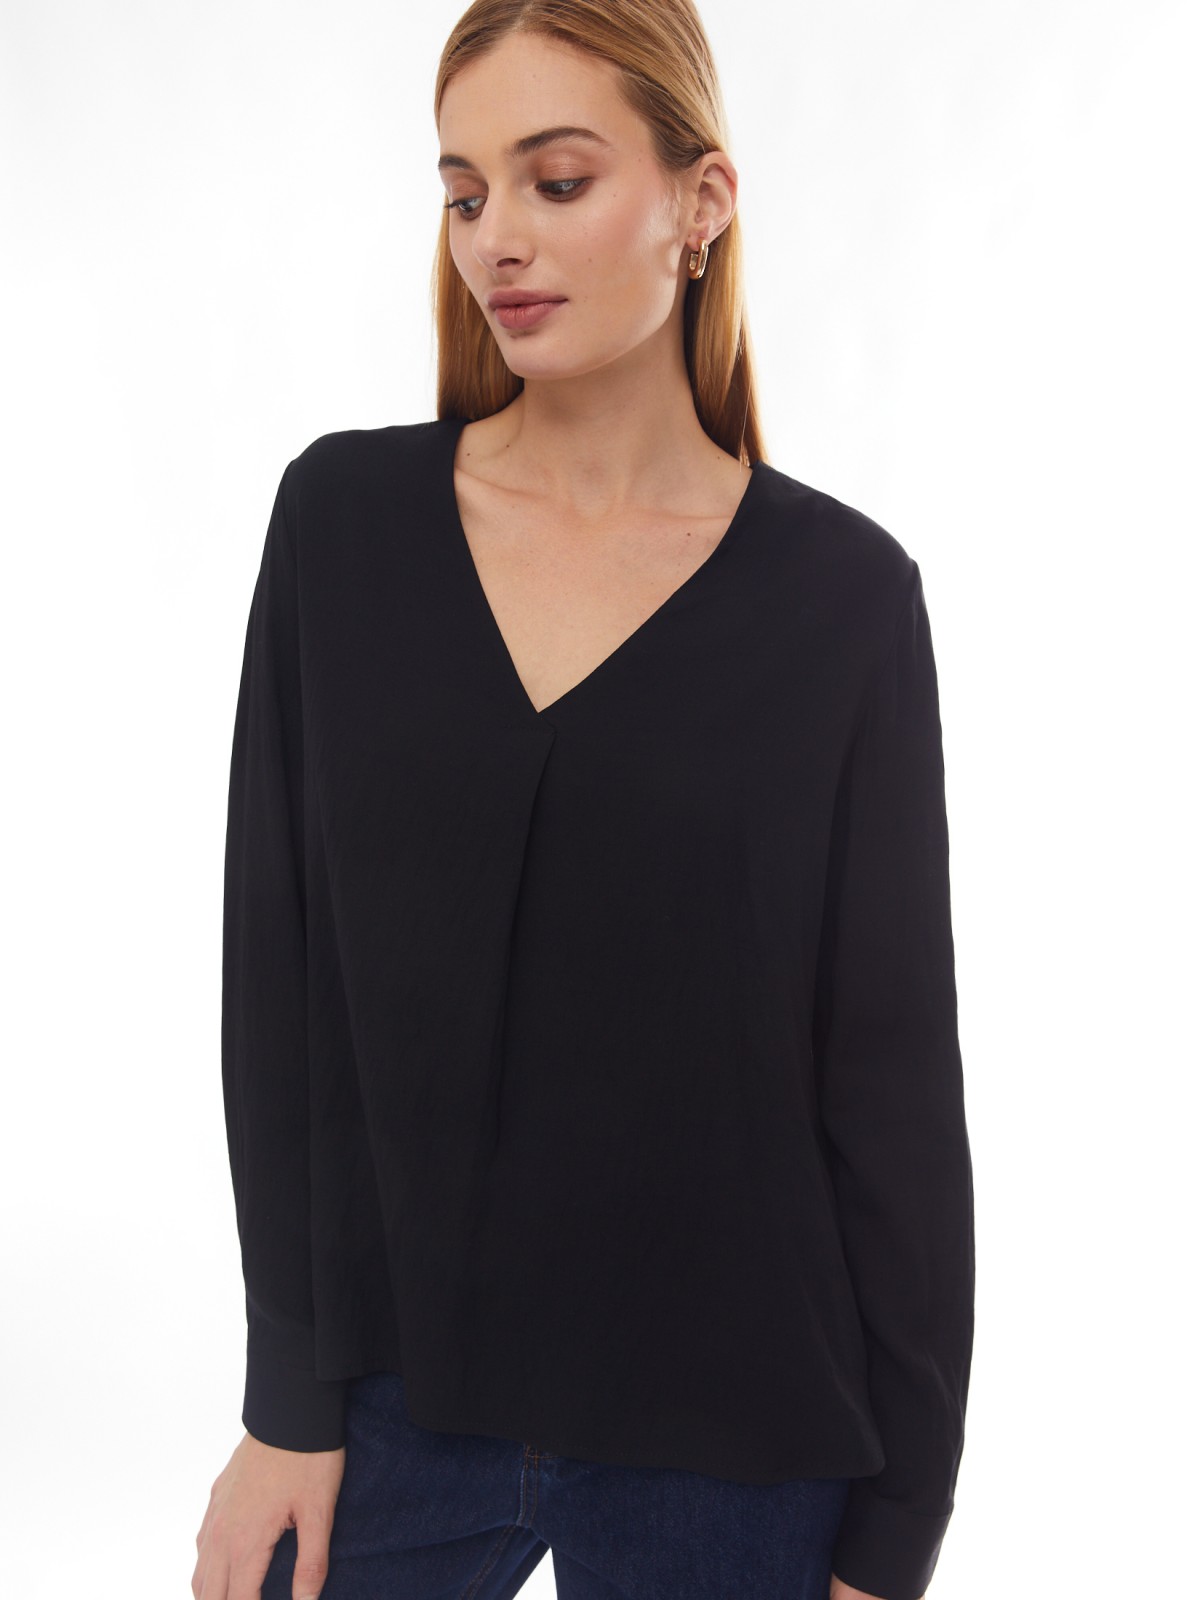 Блузка с вырезом и длинным рукавом zolla 02413117Y353, цвет черный, размер XS - фото 1